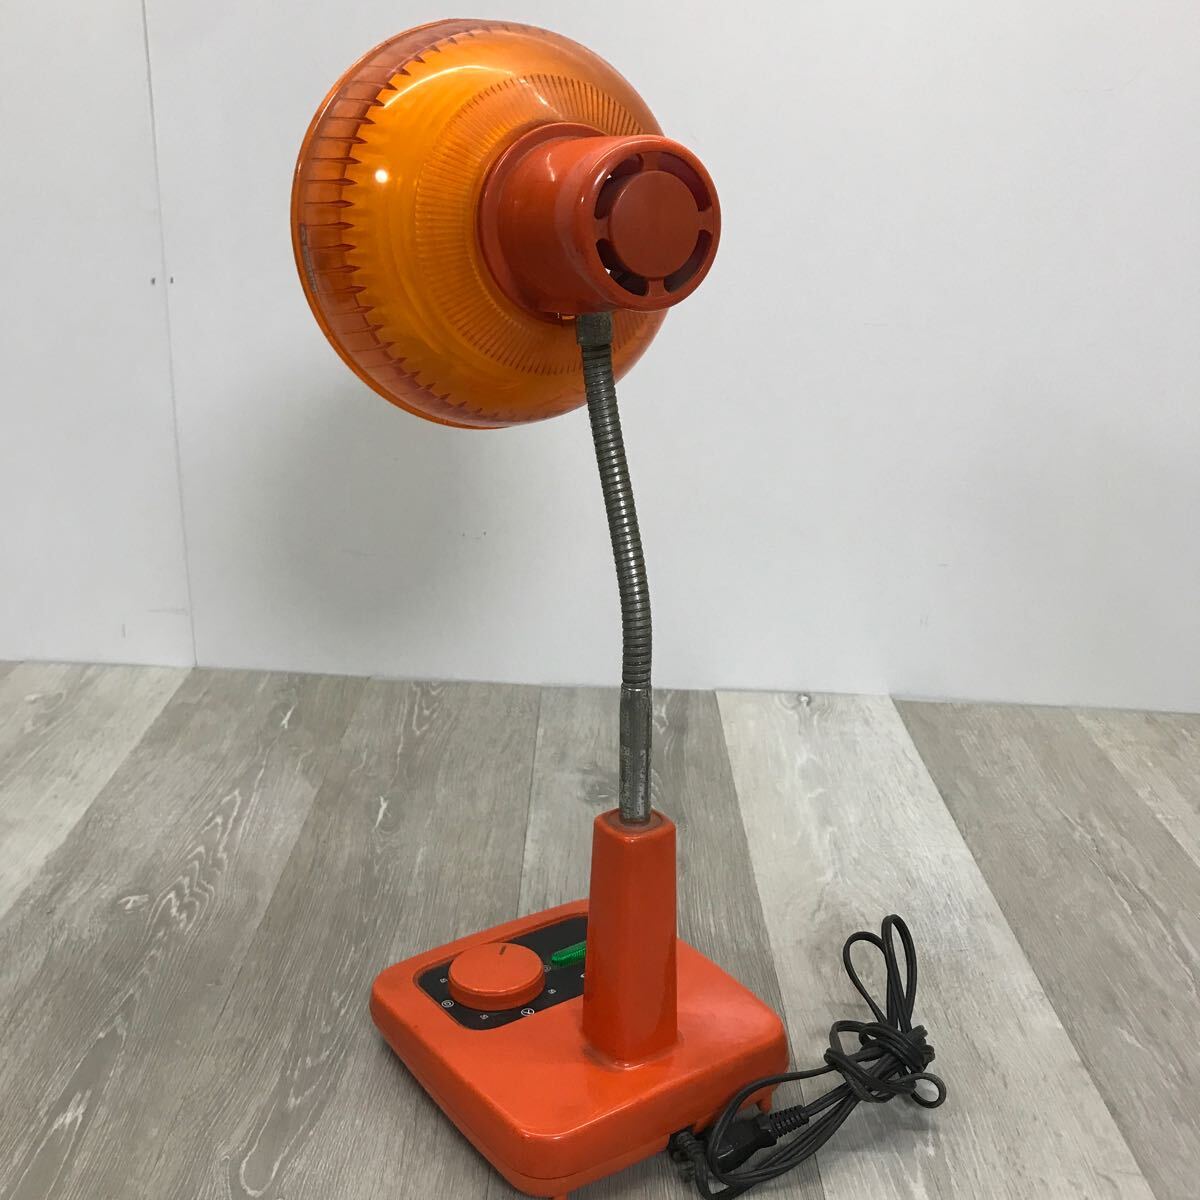 505 sharp SHARP настольный arm лампа подставка свет LS-920 стол электрический электрический подставка настольный свет настольное освещение Showa Retro orange 